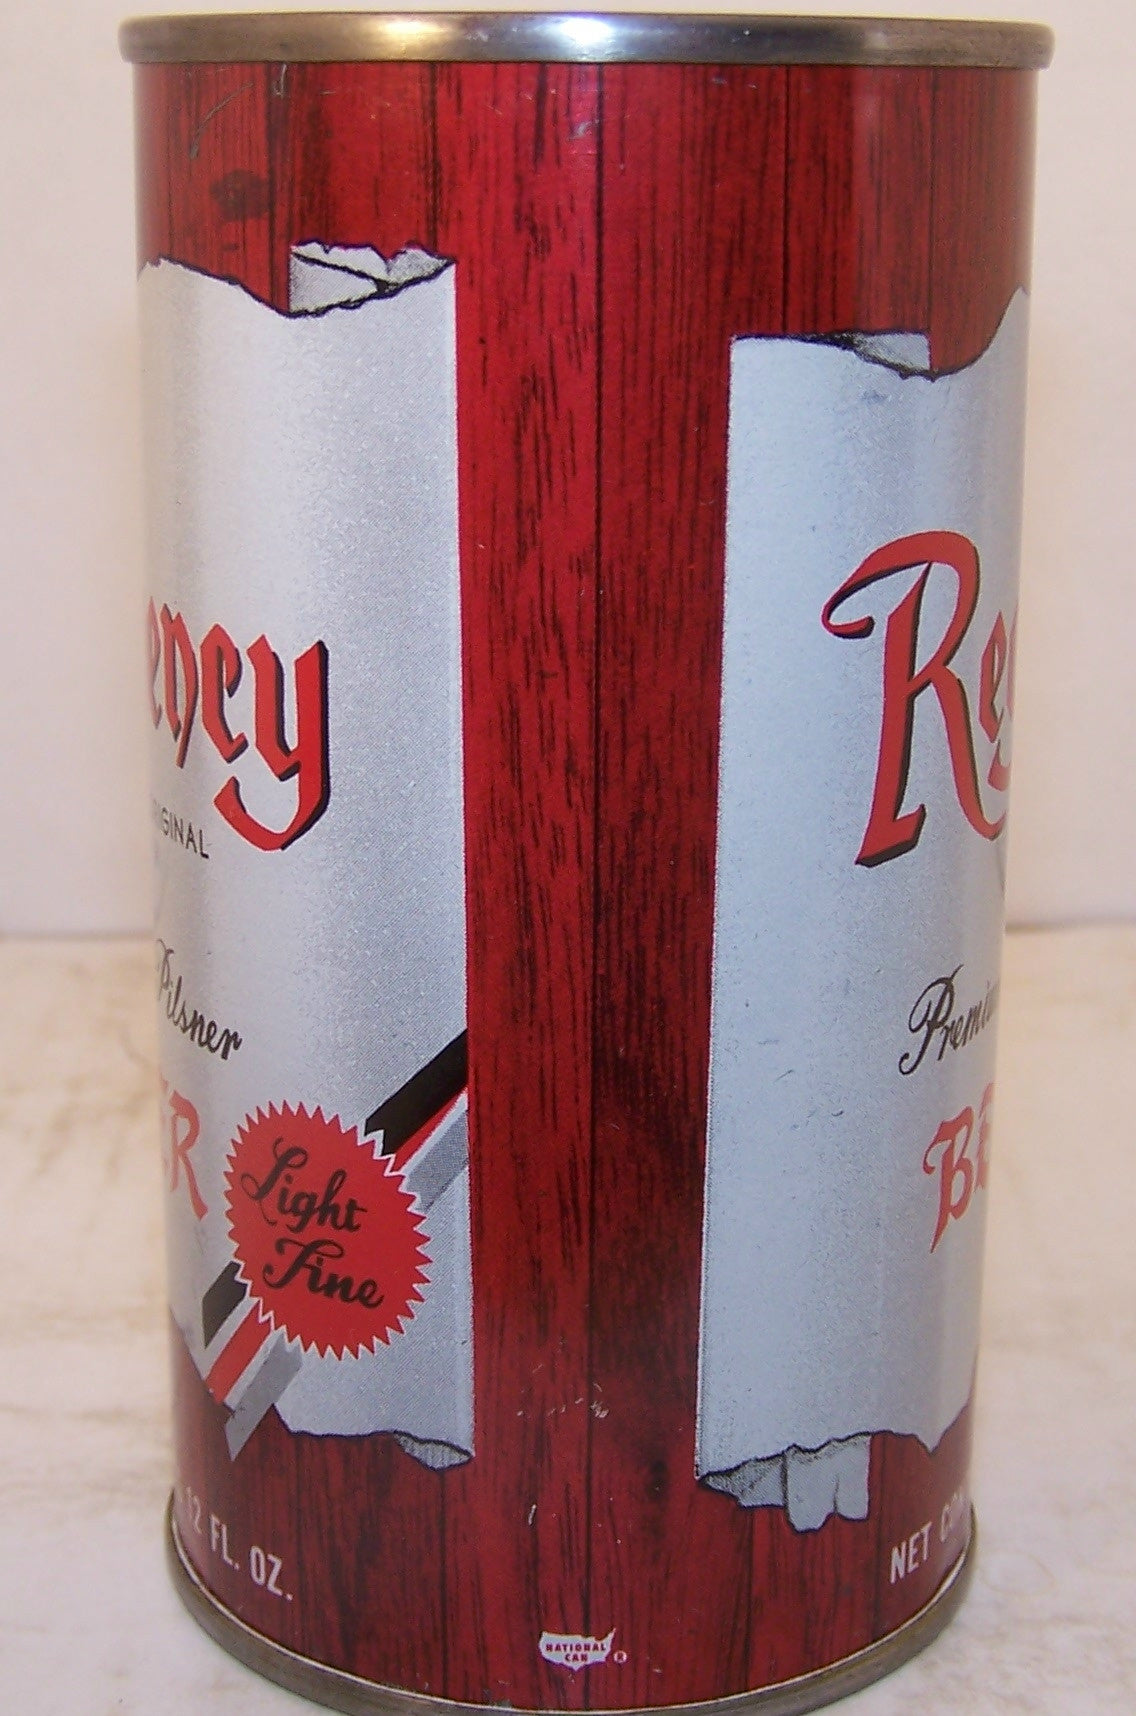 Regency Premium Pilsner Beer, USBC 122-6, Grade 1/1+ Sold 1/6/15